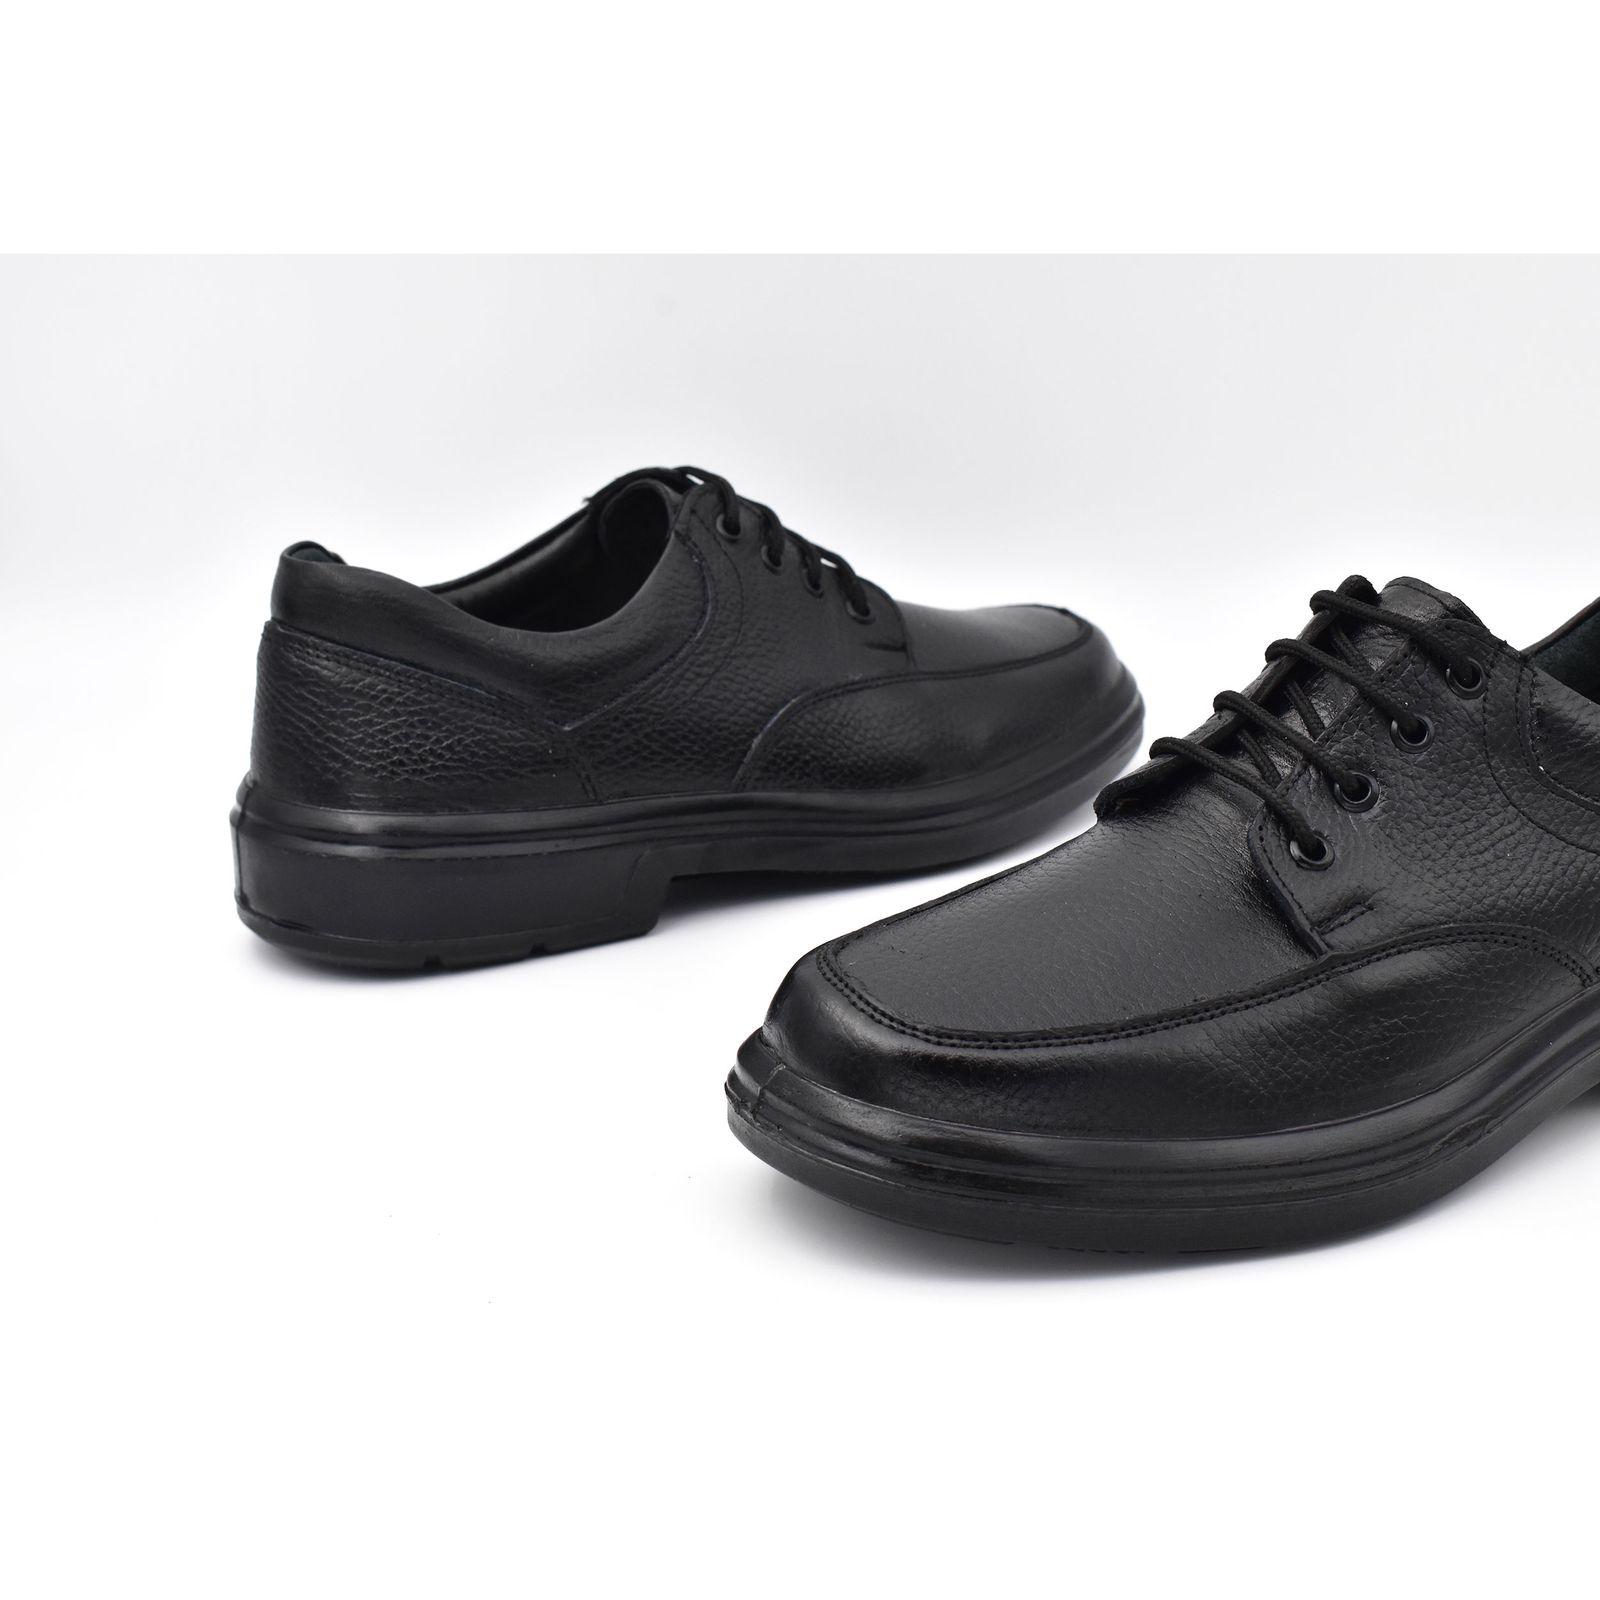 کفش روزمره مردانه پاما مدل Arizona کد G1171 -  - 6